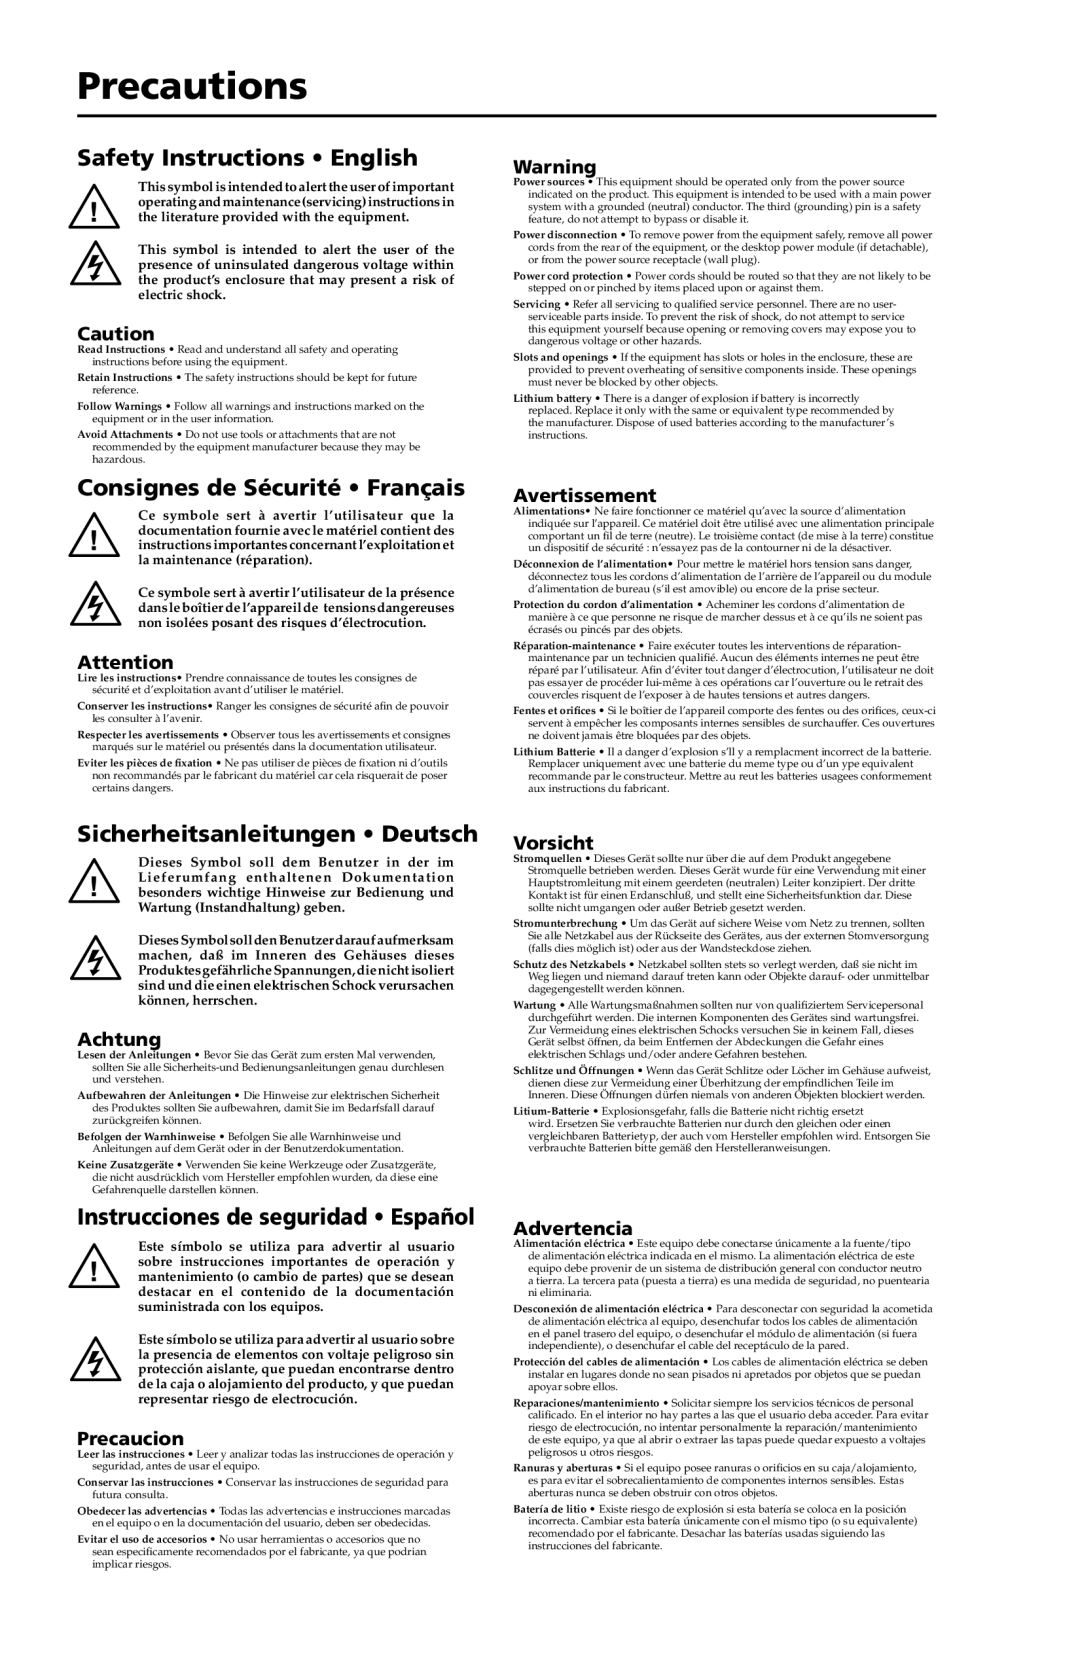 Extron electronic P/2 DA6xi s Precautions, Safety Instructions English, Consignes de Sécurité Français, Avertissement 